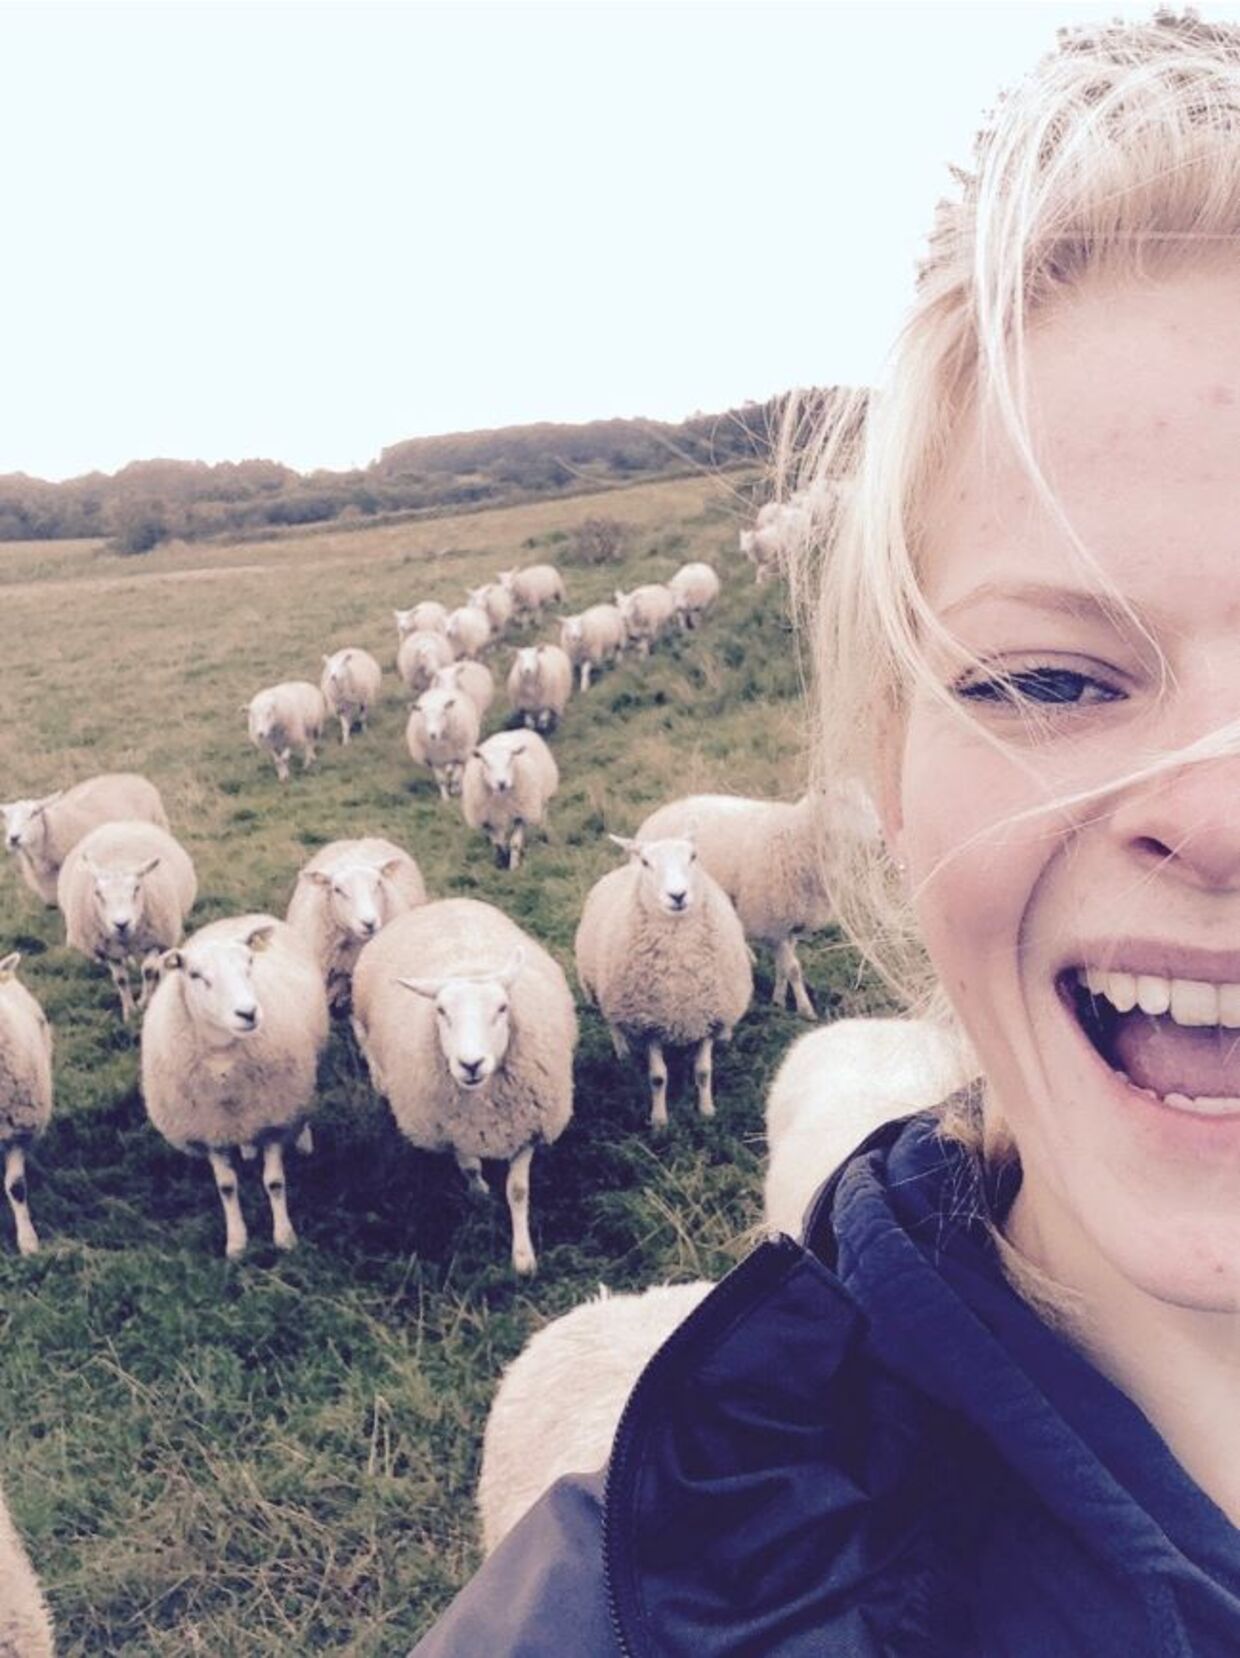 Shila Pedersen blev ramt af depression efter sin fyring fra Troldgaarden, som hovedsageligt leverer svinekød til restauranter. I dag arbejder hun på en gård med kvæg og er igen i gang med sin uddannelse.